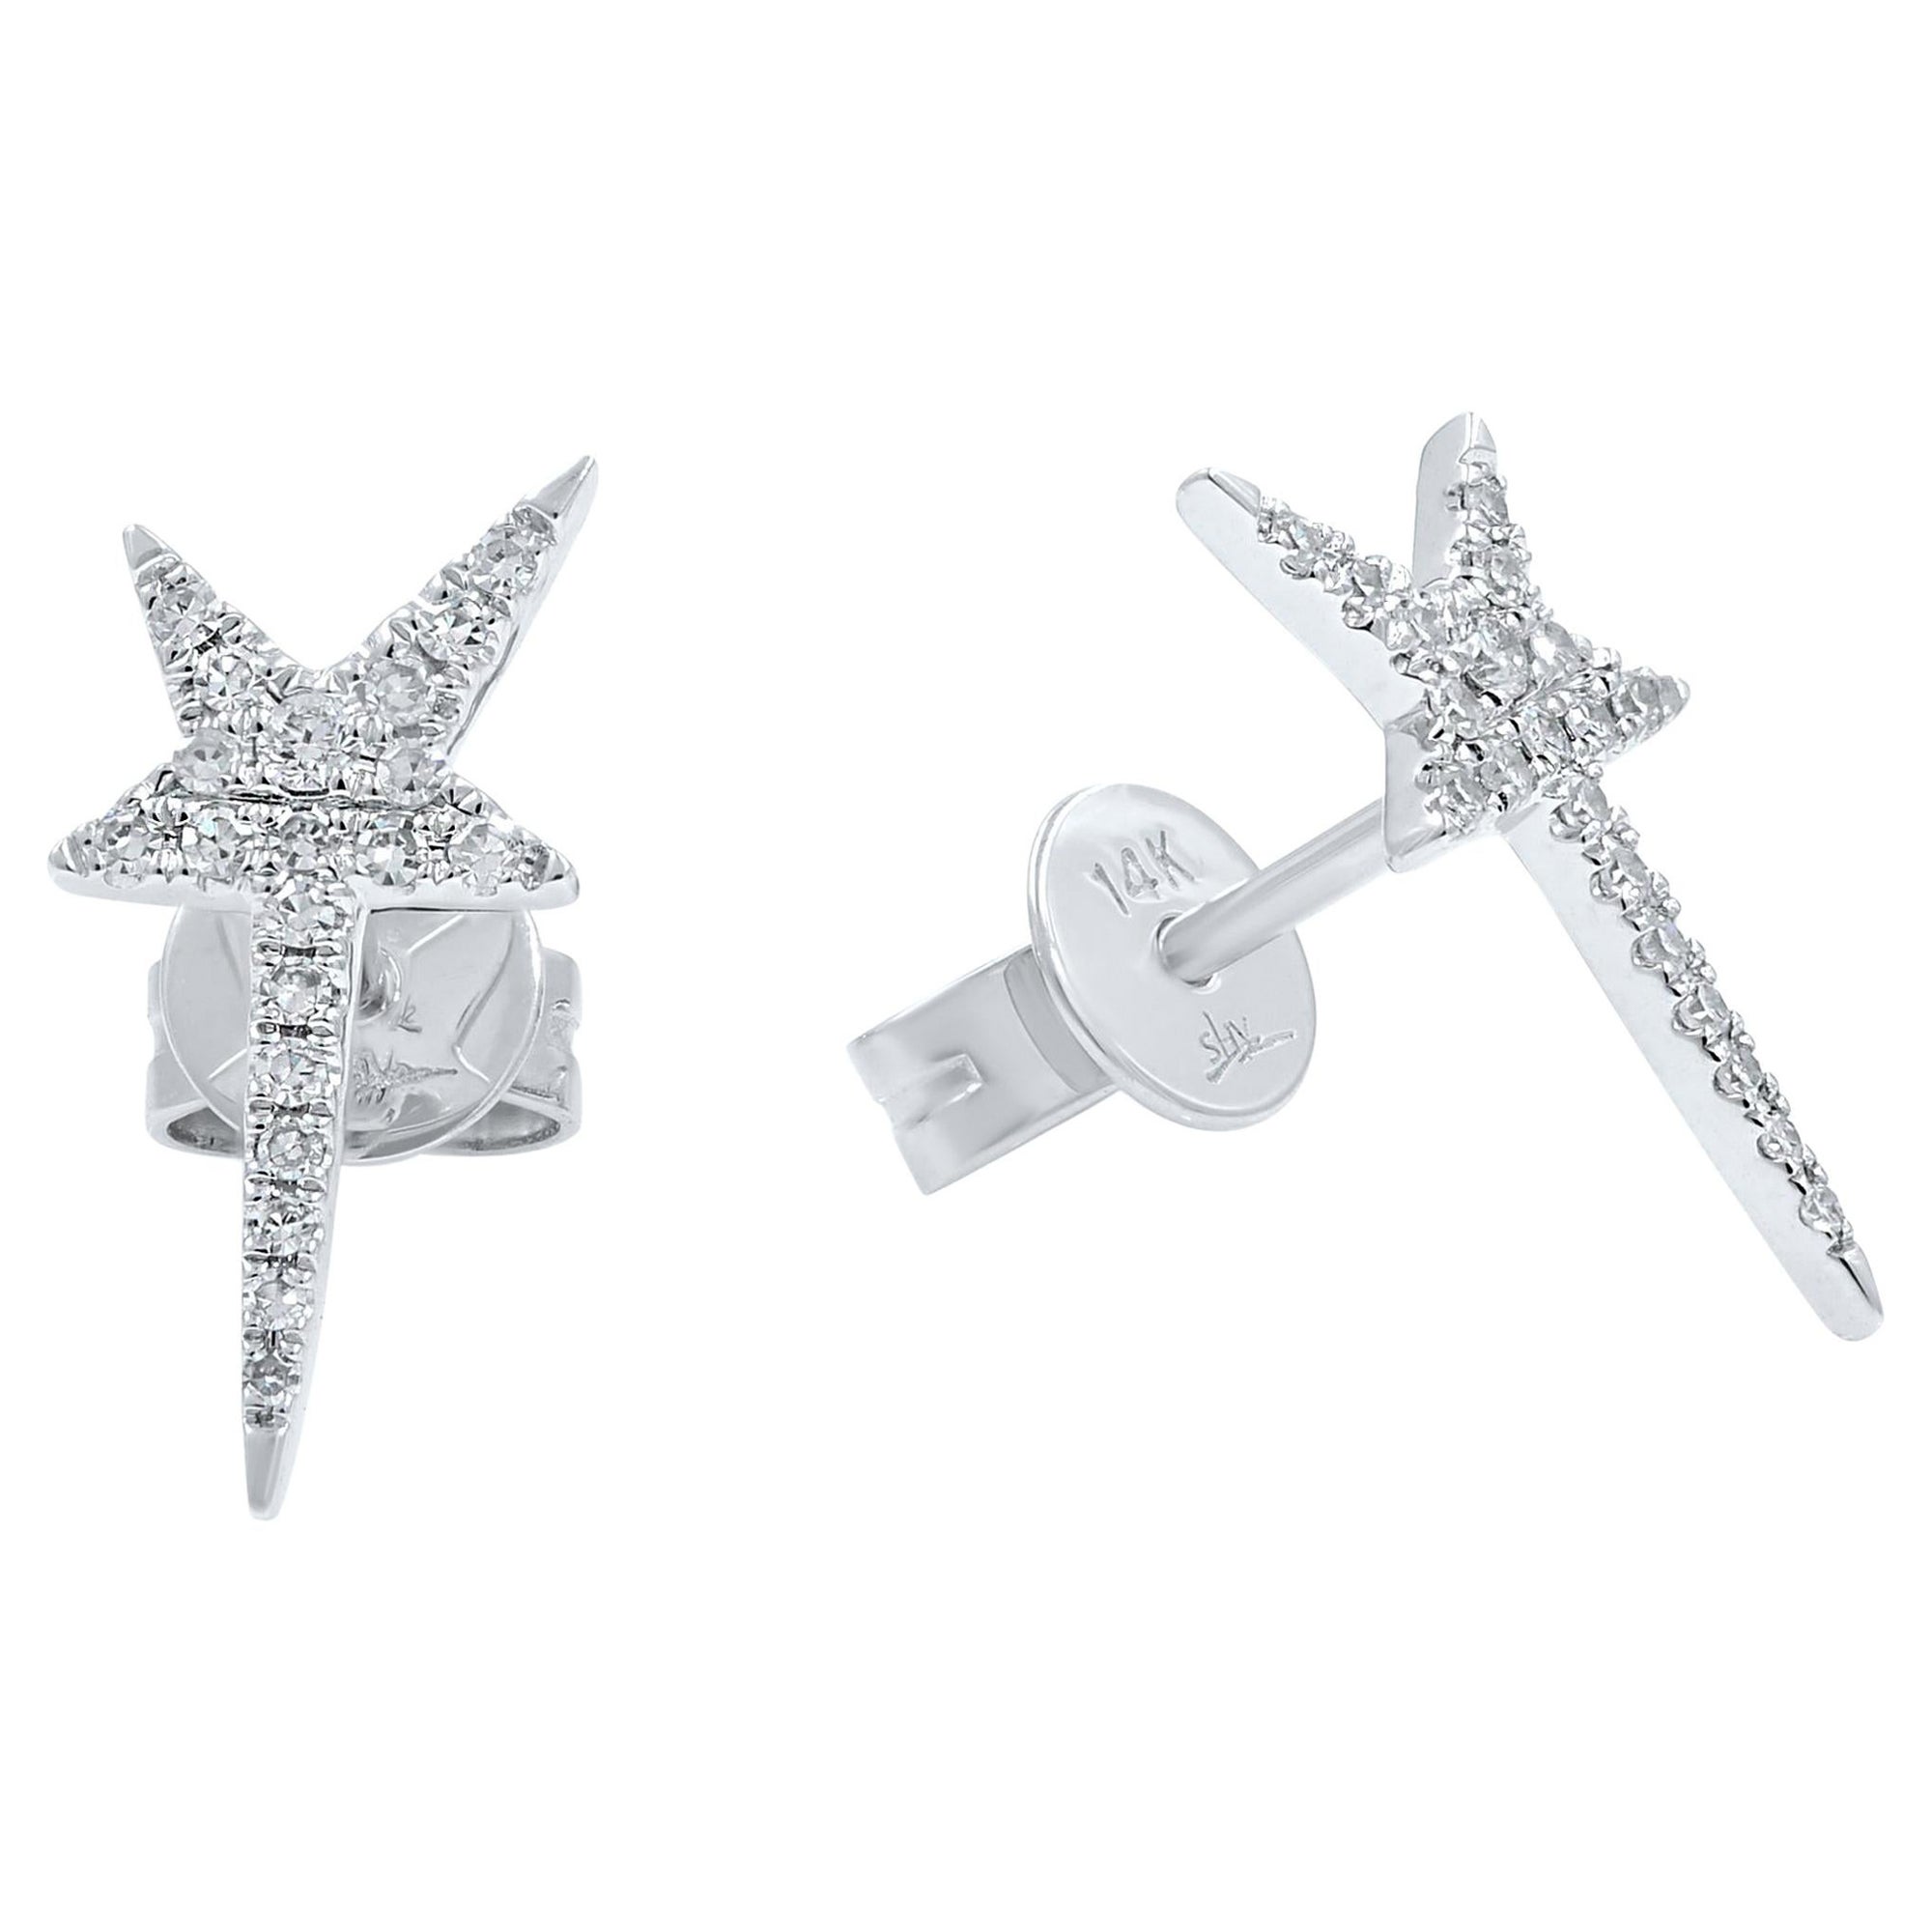 Rachel Koen Pave Diamond Star Stud Earrings 14K White Gold 0.13 Cttw For Sale